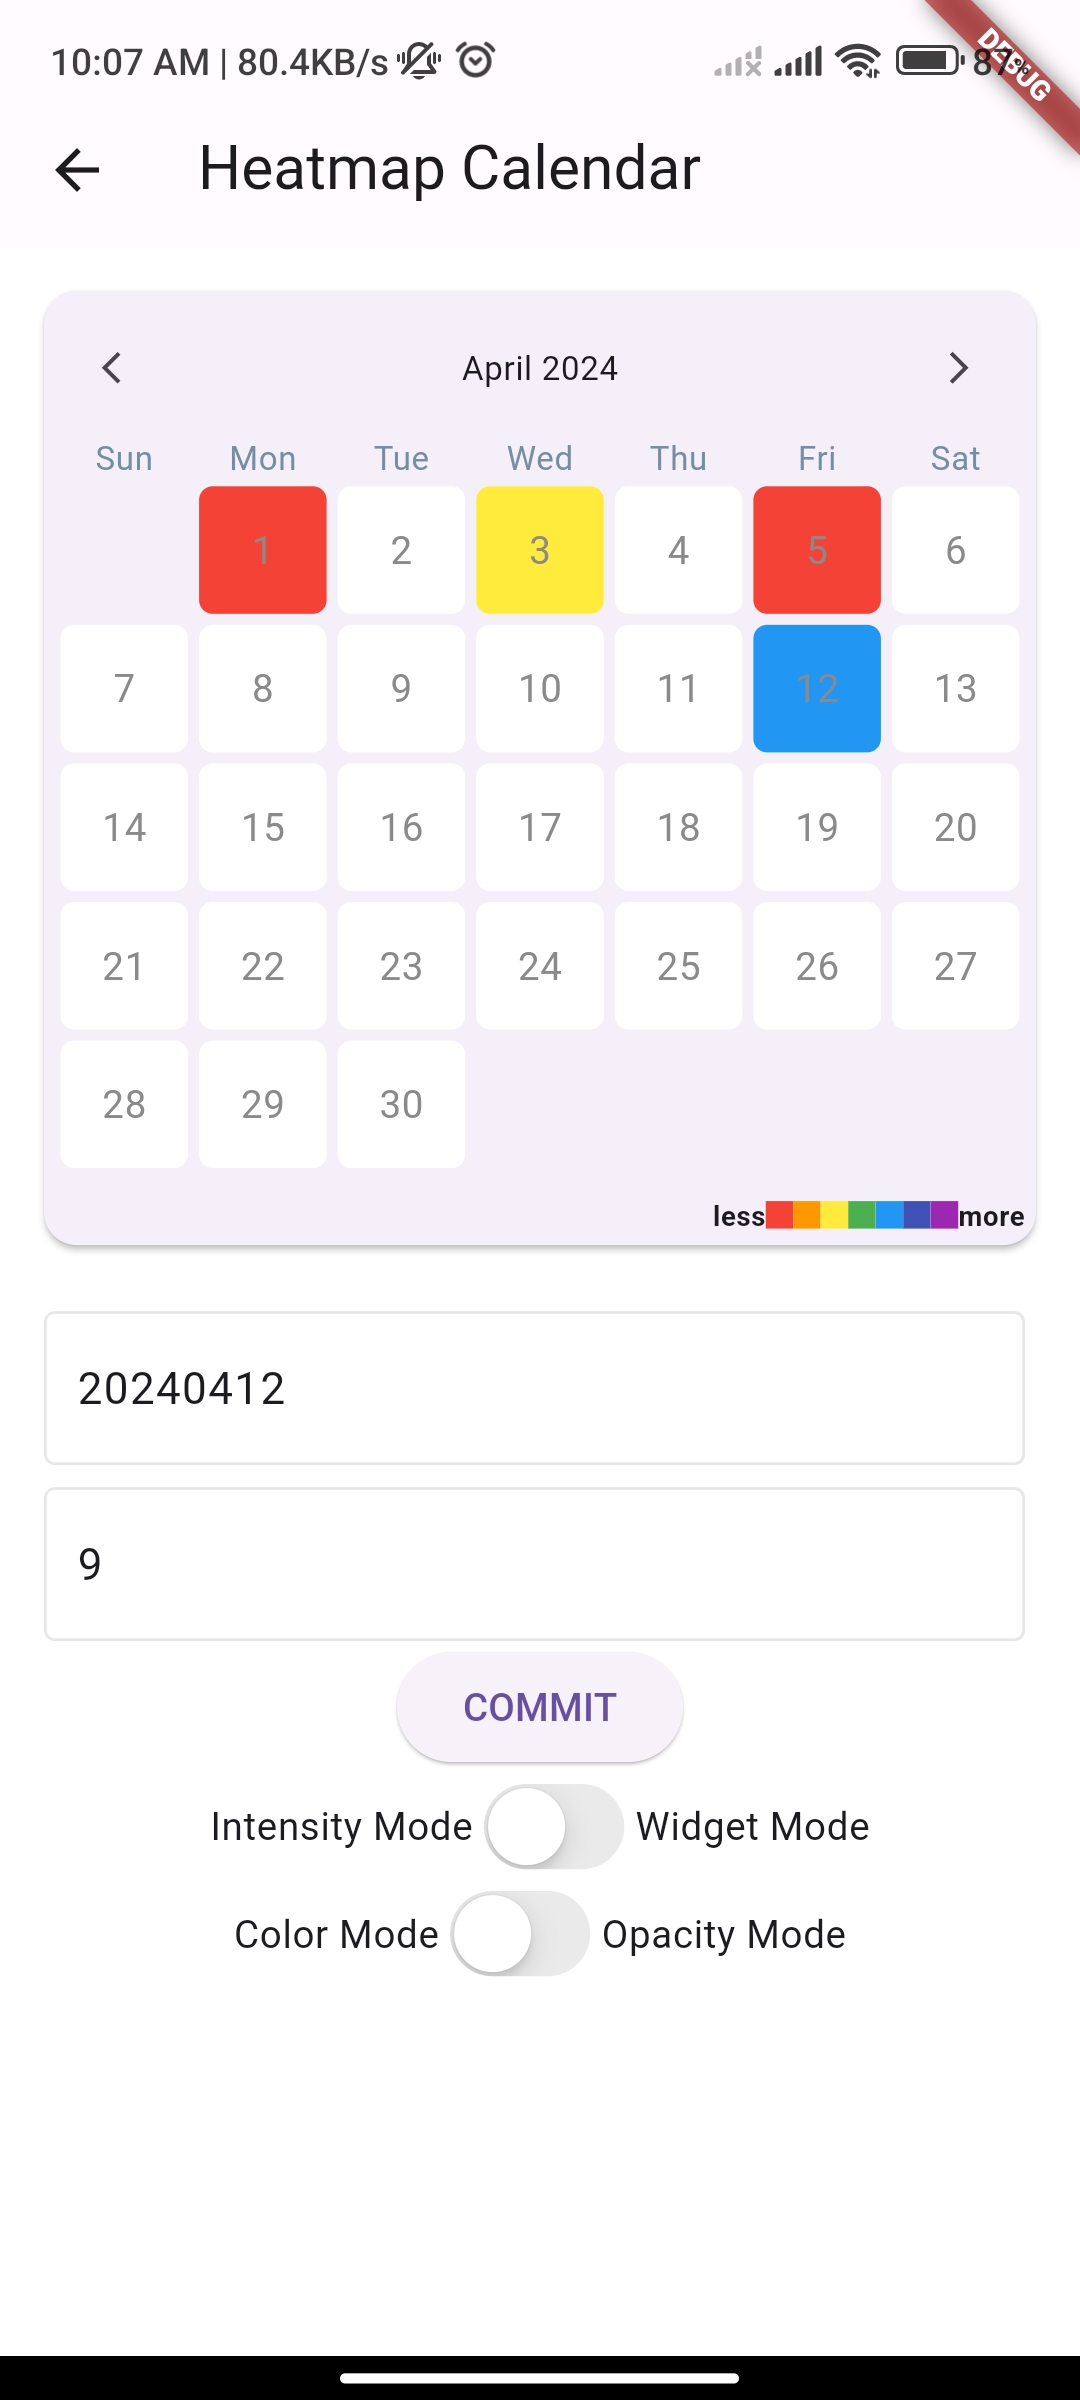 A HeatMap Calendar built with Flutter